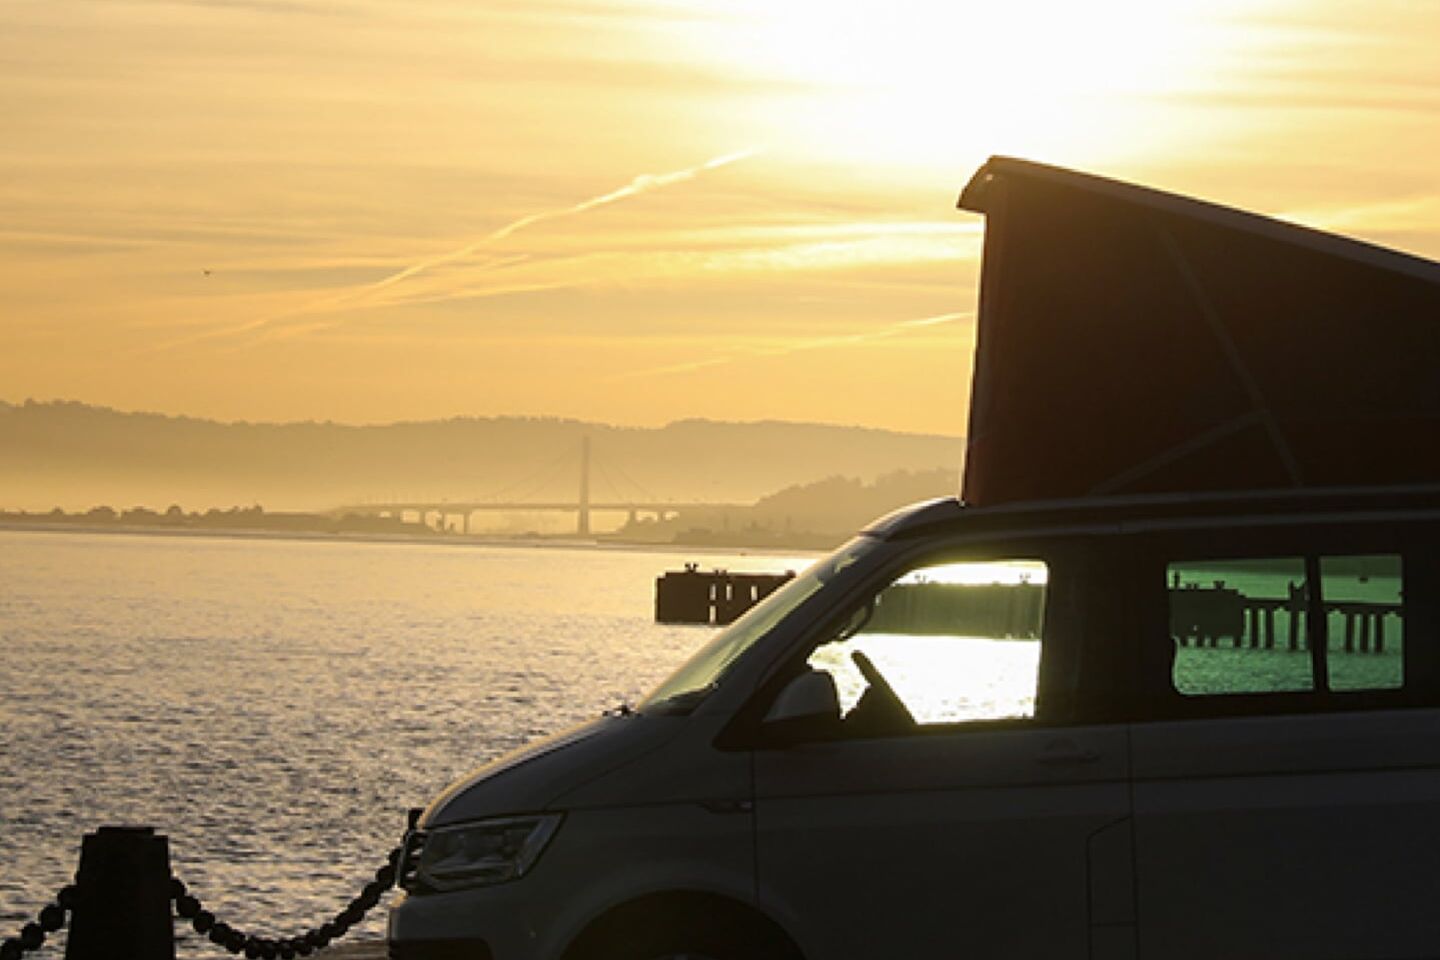 A California da Volkswagen Veículos Comerciais em contra-luz ao pôr do sol numa estrada costeira à beira-mar.